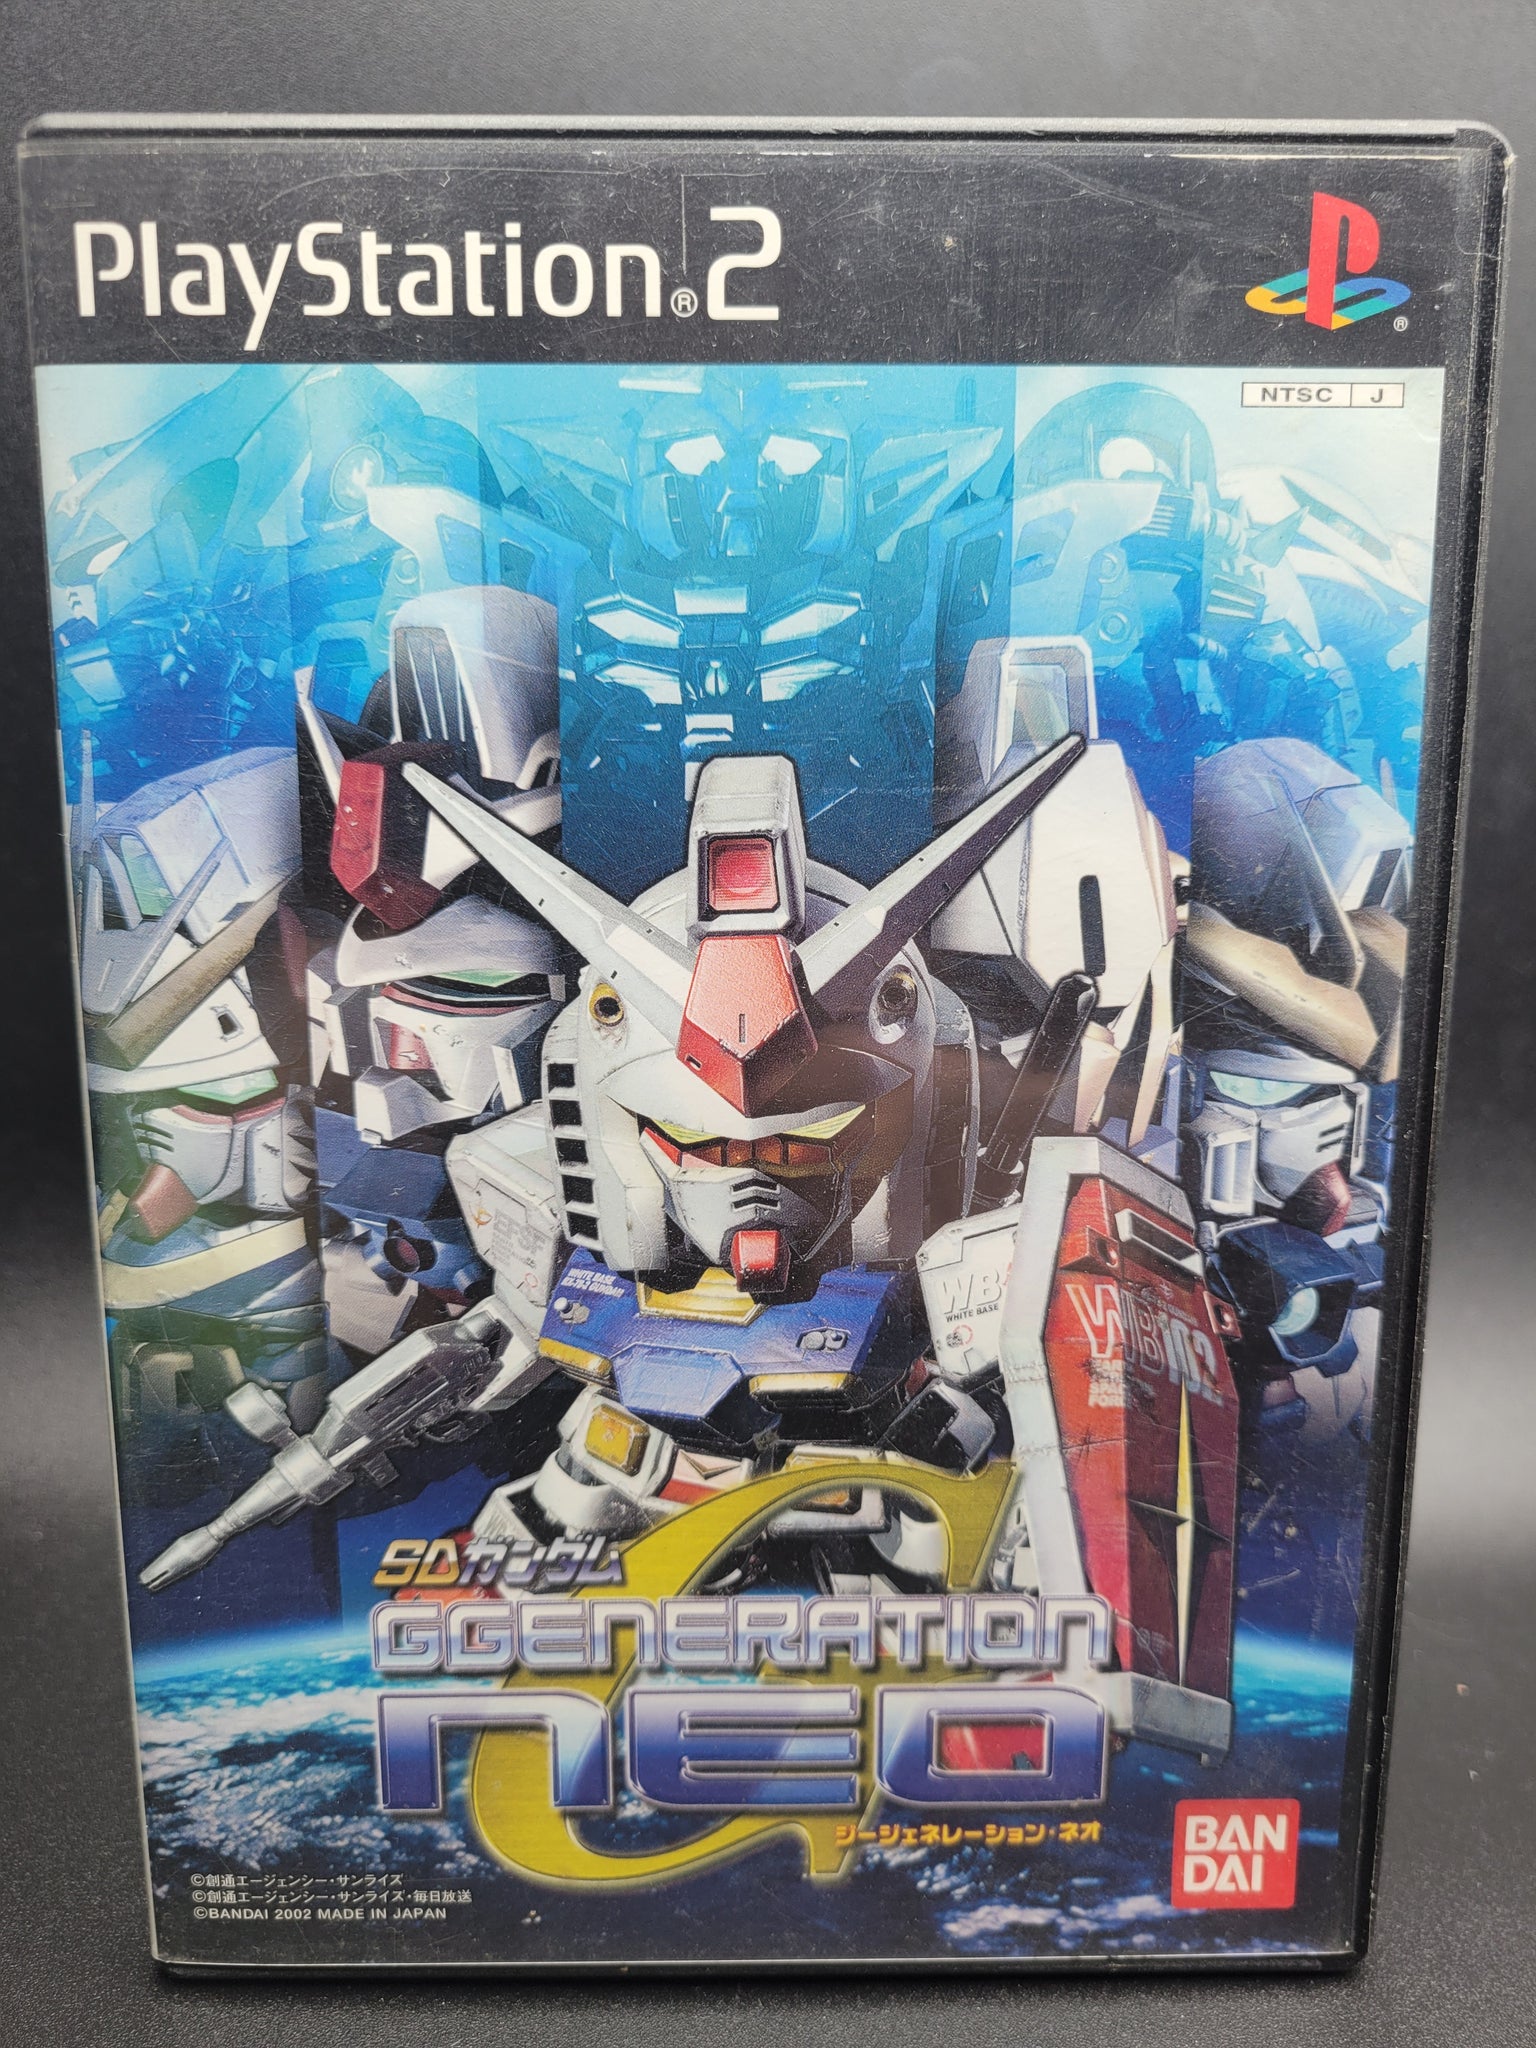 Sd Gundam G Generation Neo Bandai Playstation 2 Ps2 Played In Japan